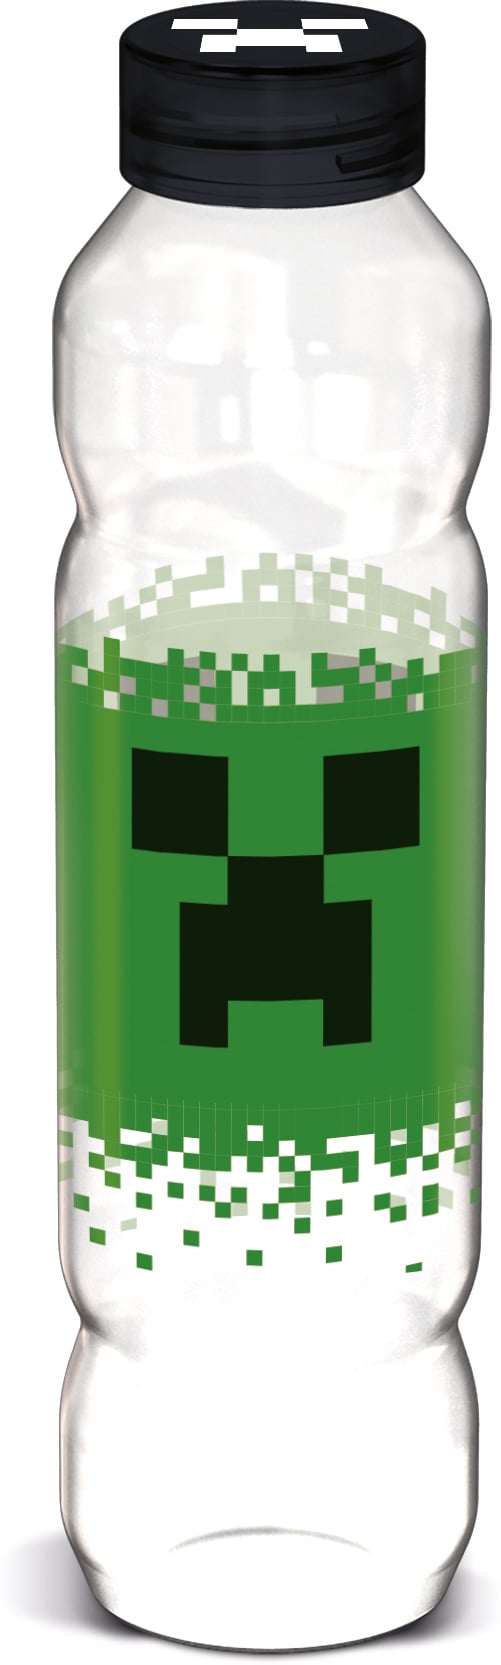 Minecraft - Water Bottle 1200ml (3453) - Leker